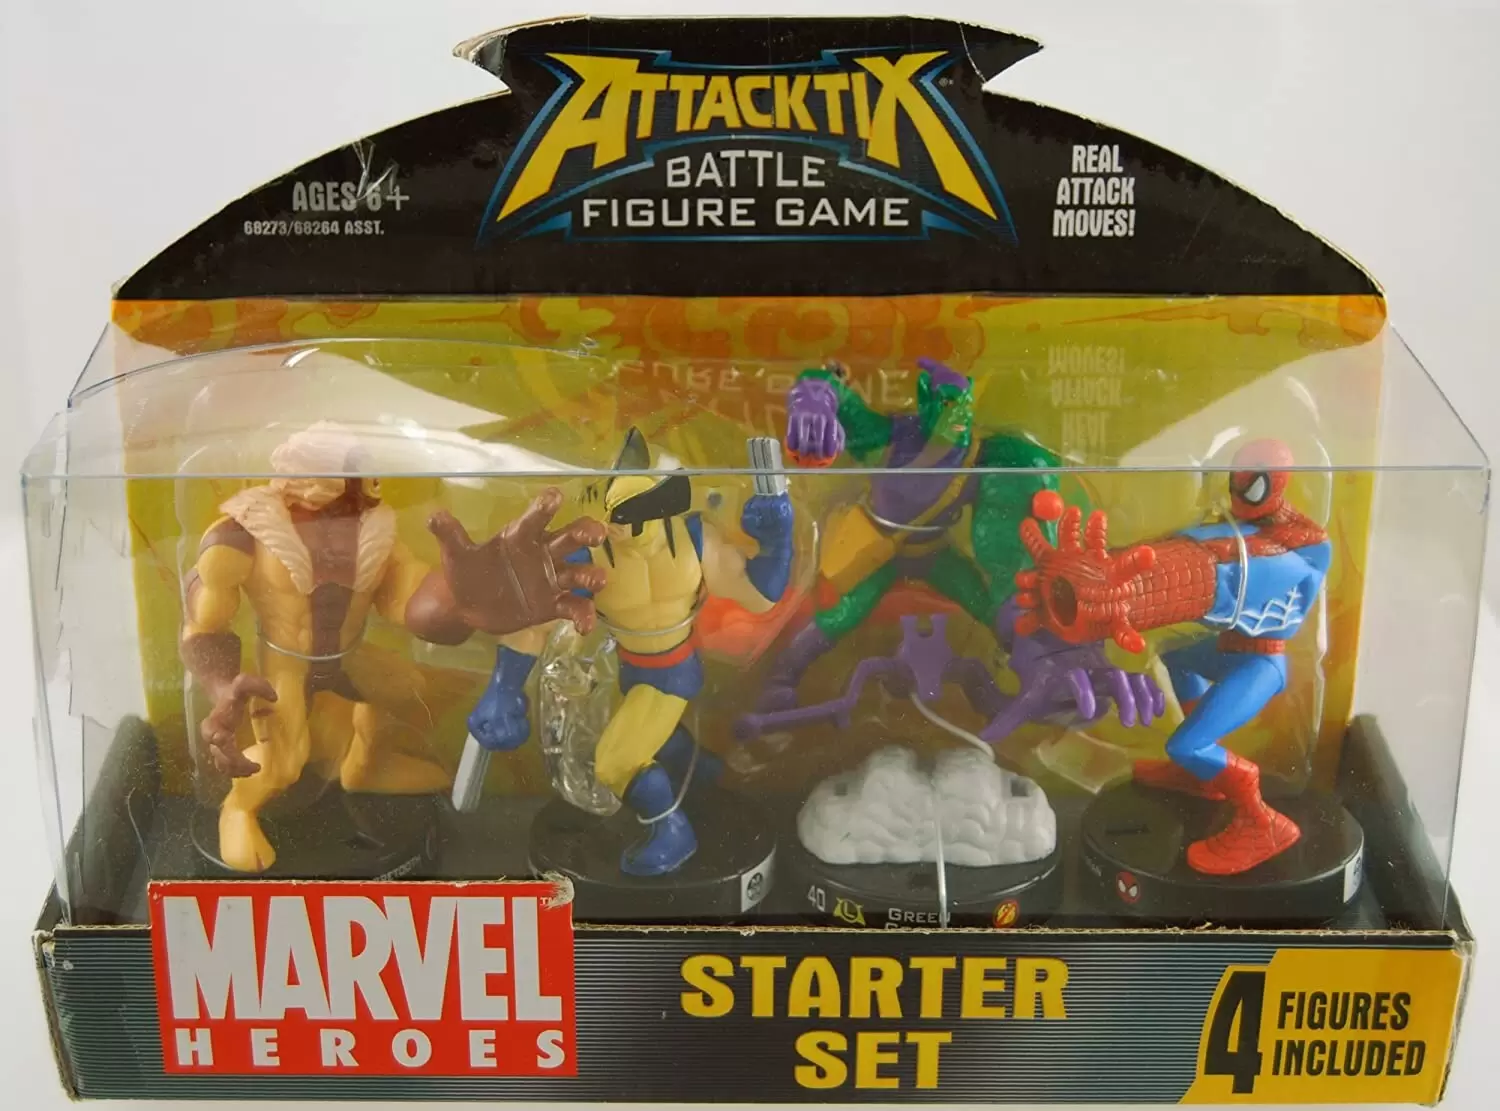 Marvel Attacktix Battle Figures - Marvel Heroes Starter Set 4 Pack